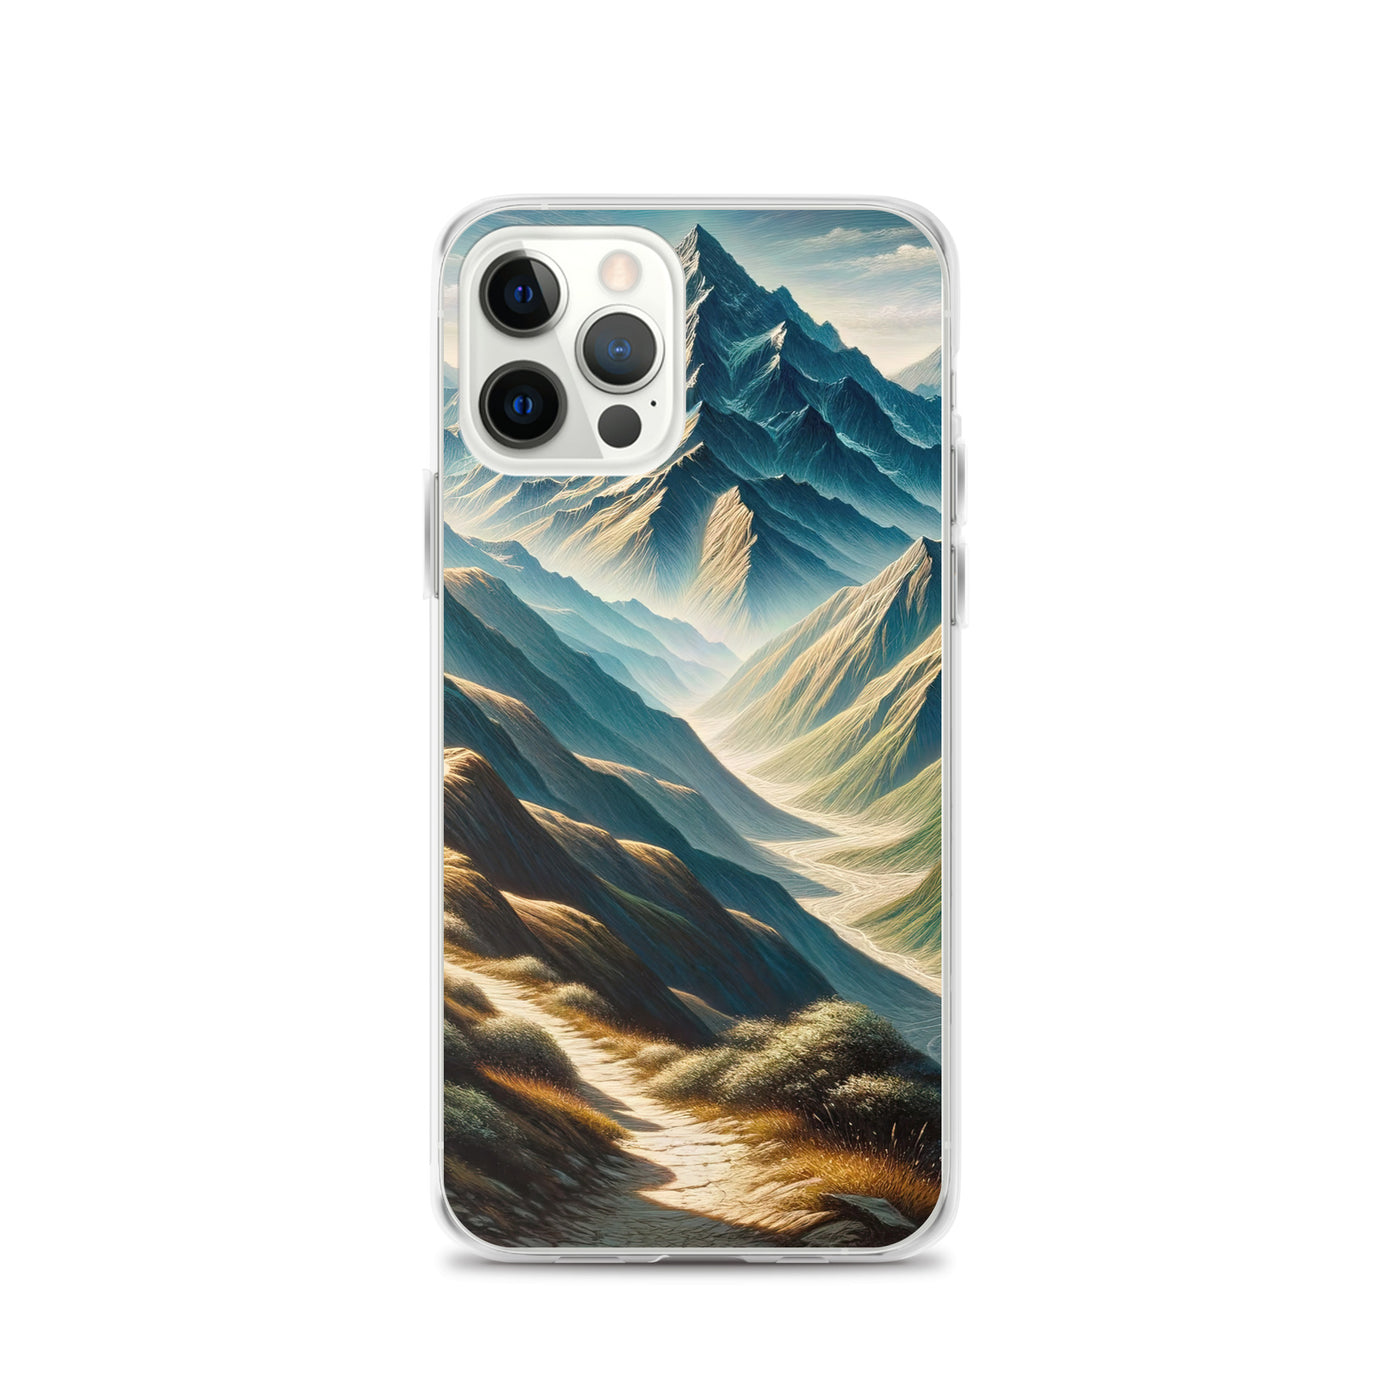 Berglandschaft: Acrylgemälde mit hervorgehobenem Pfad - iPhone Schutzhülle (durchsichtig) berge xxx yyy zzz iPhone 12 Pro